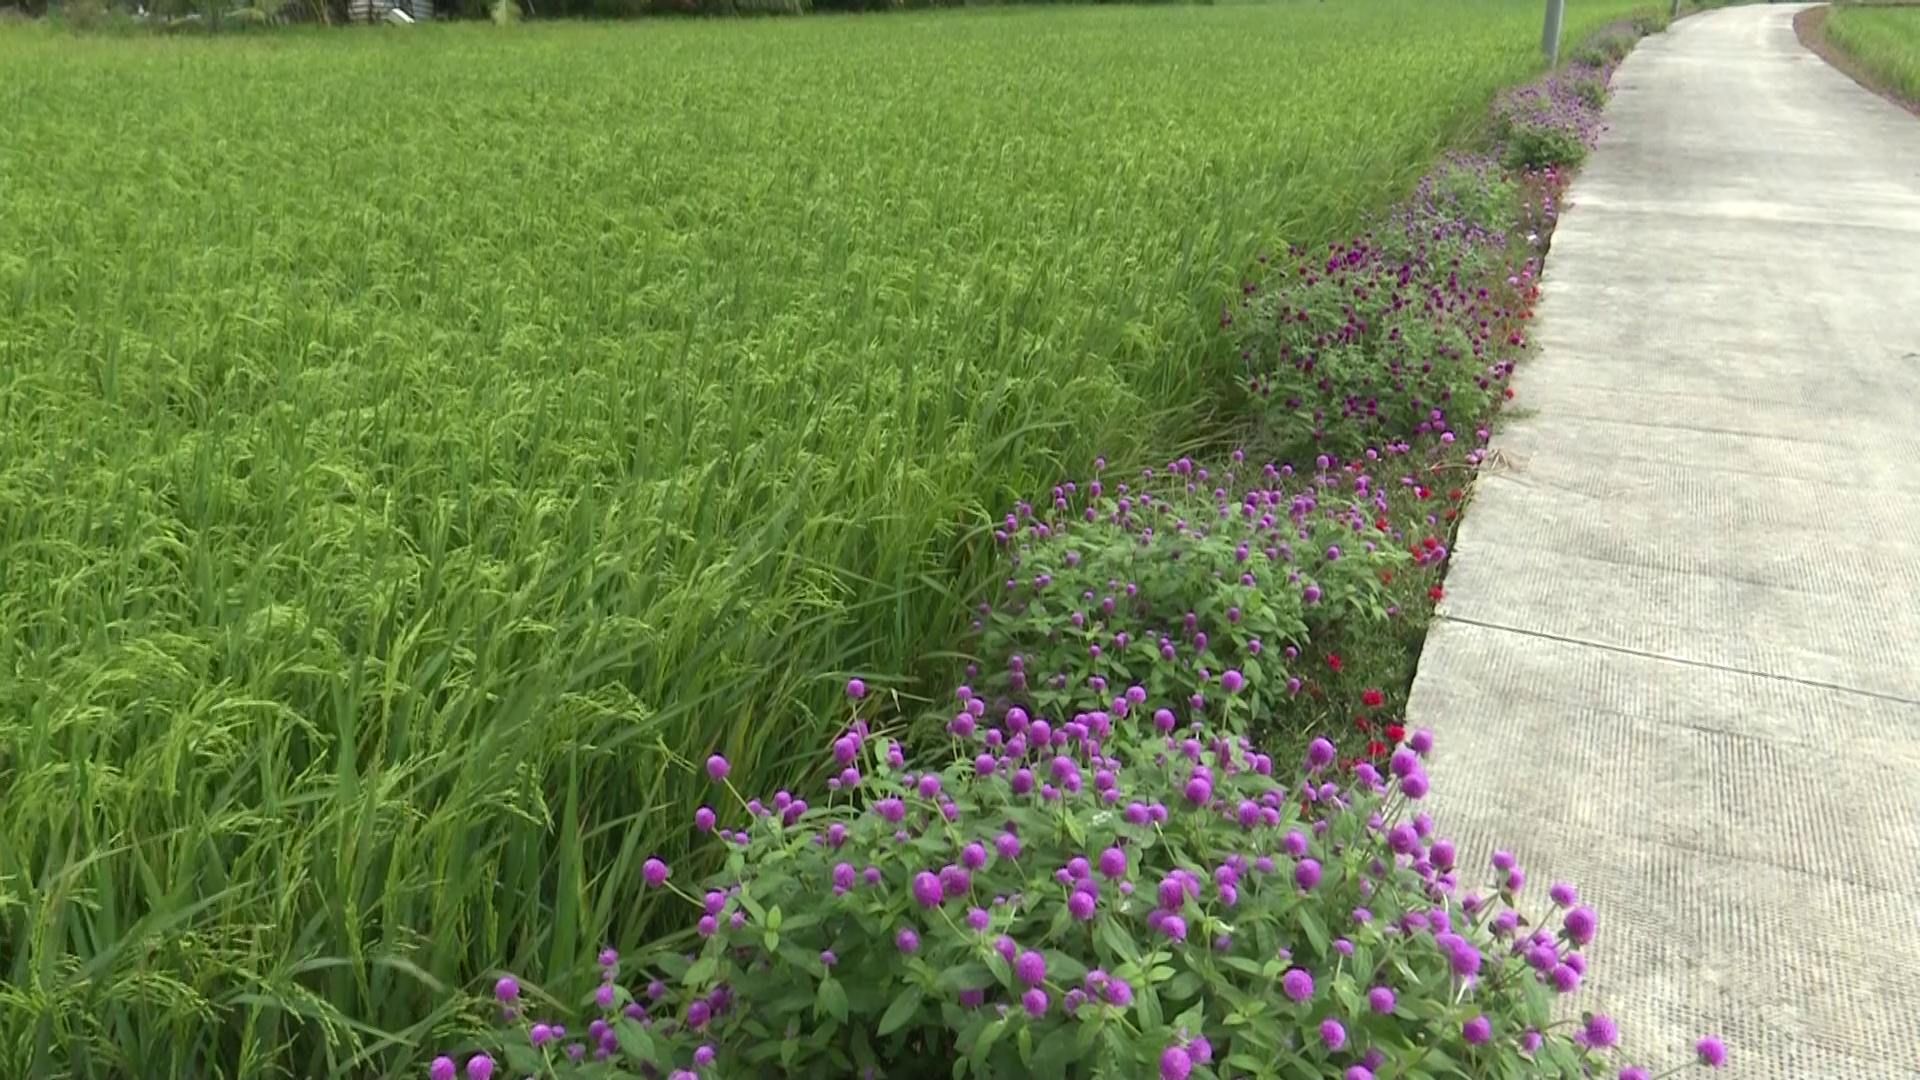 Mô hình nông nghiệp thông minh ứng phó với biến đổi khí hậu  Bài 2 Sạch  đẹp nhờ ruộng lúa bờ hoa